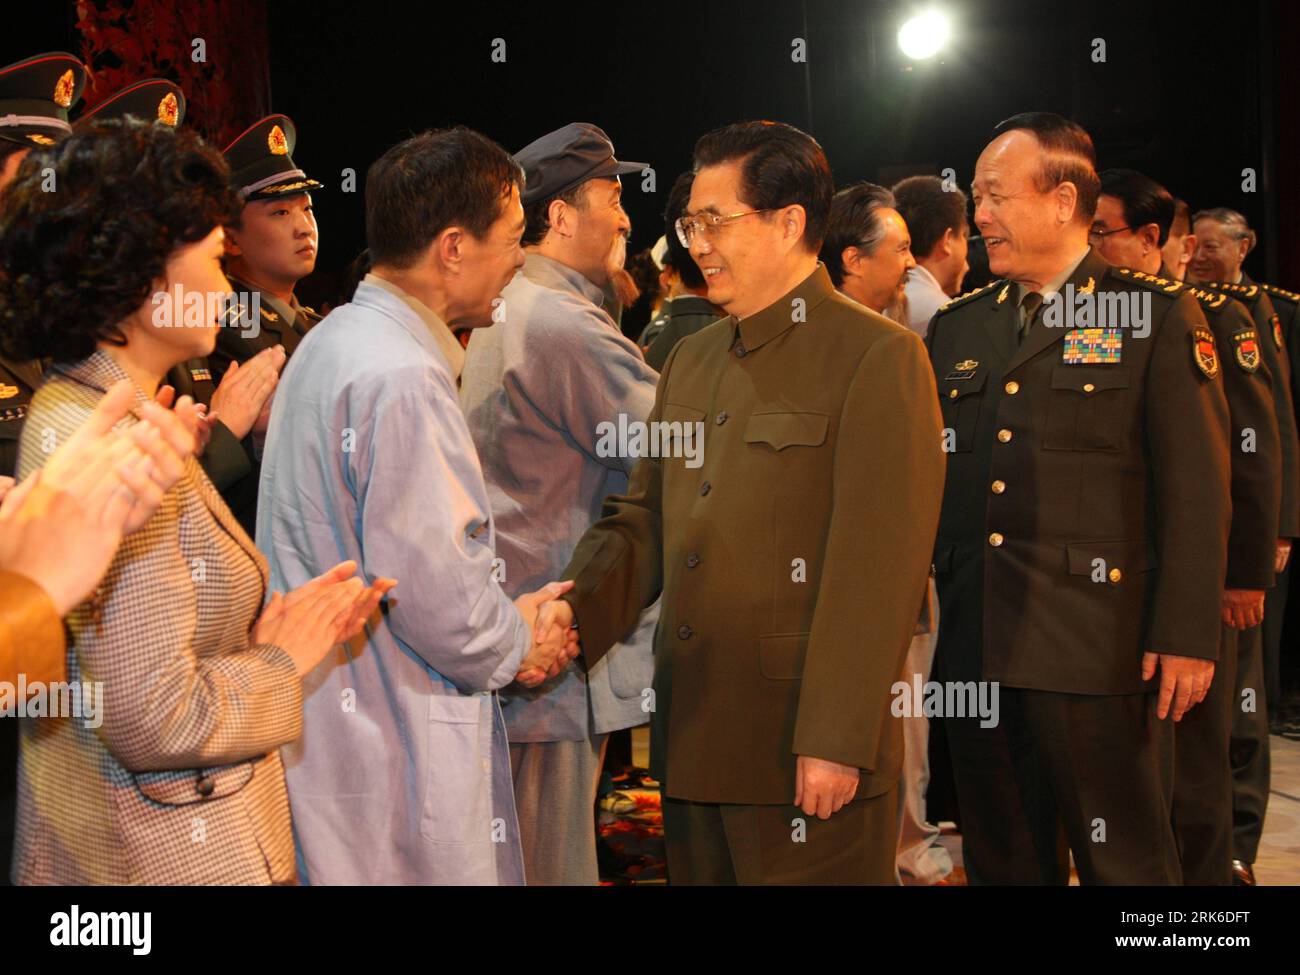 Bildnummer: 53830051 Datum: 02.03.2010 Copyright: Imago/Xinhua (100302) -- BEIJING, 2 de marzo de 2010 (Xinhua) -- Hu Jintao (C), secretario general del Comité Central del Partido Comunista de China, presidente chino y presidente de la Comisión Militar Central, se reúne con los artistas después de ver un drama en honor a Liu Yiquan. Secretario de archivo en los archivos del Ejército Popular de Liberación, en Beijing, capital de China, 2 de marzo de 2010. (Xinhua/Wang Jianmin) CHINA-BEIJING-HU JINTAO-DRAMA-LIU YIQUAN (CN) PUBLICATIONxNOTxINxCHN Gente Politik kbdig xmk 2010 quer premiumd número de archivo 5383 Foto de stock